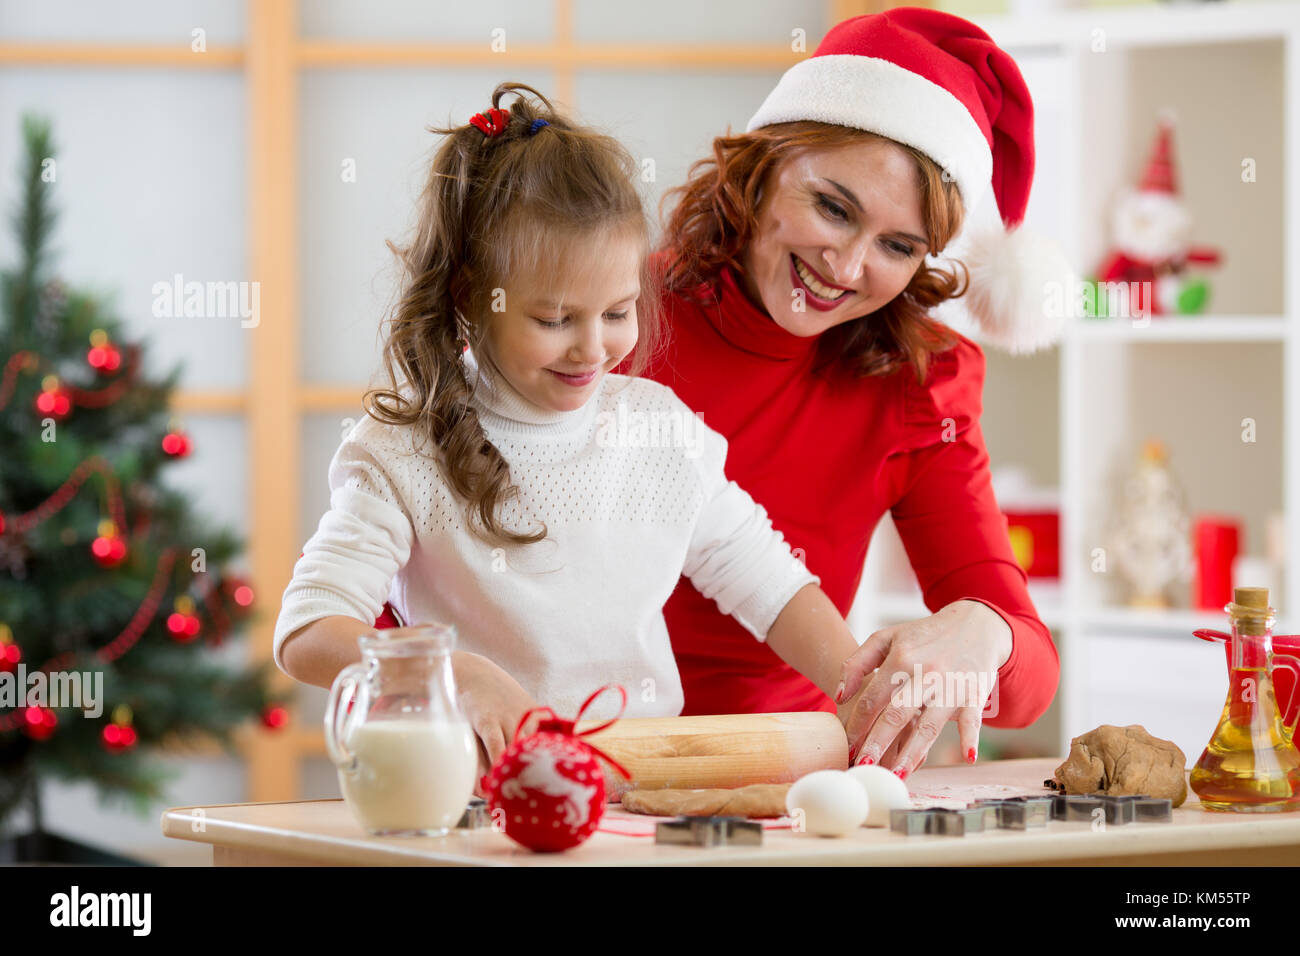 Kid adorable fille et mère baking christmas cookies Banque D'Images